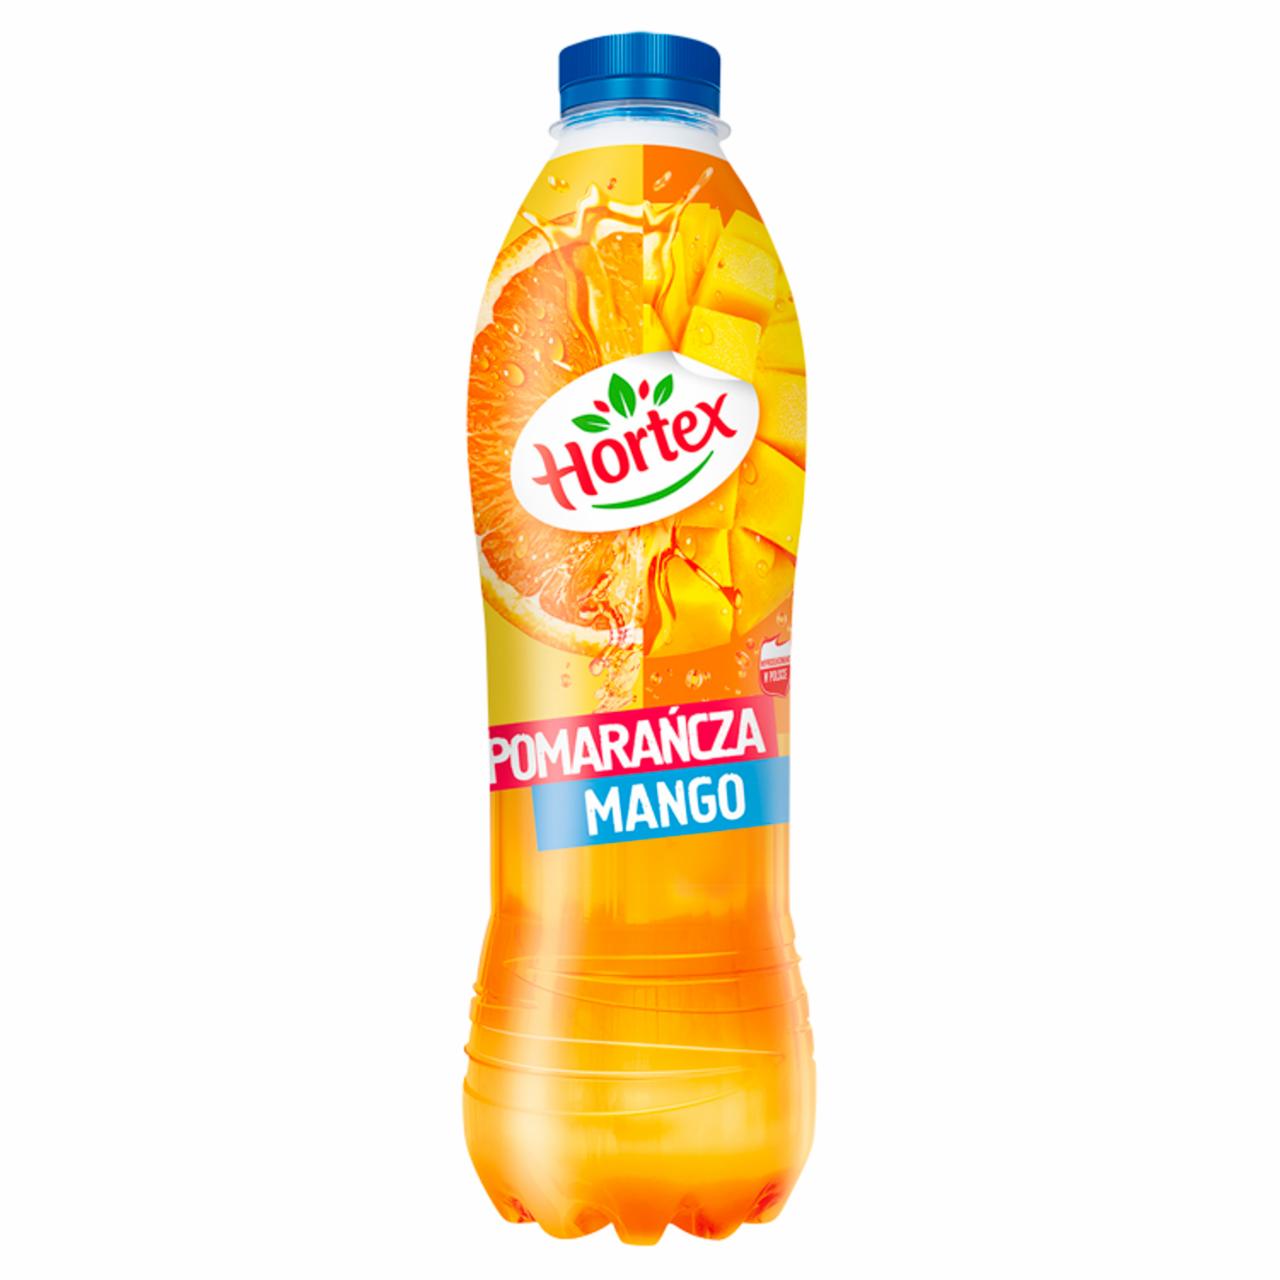 Zdjęcia - Hortex Napój pomarańcza mango 1 l